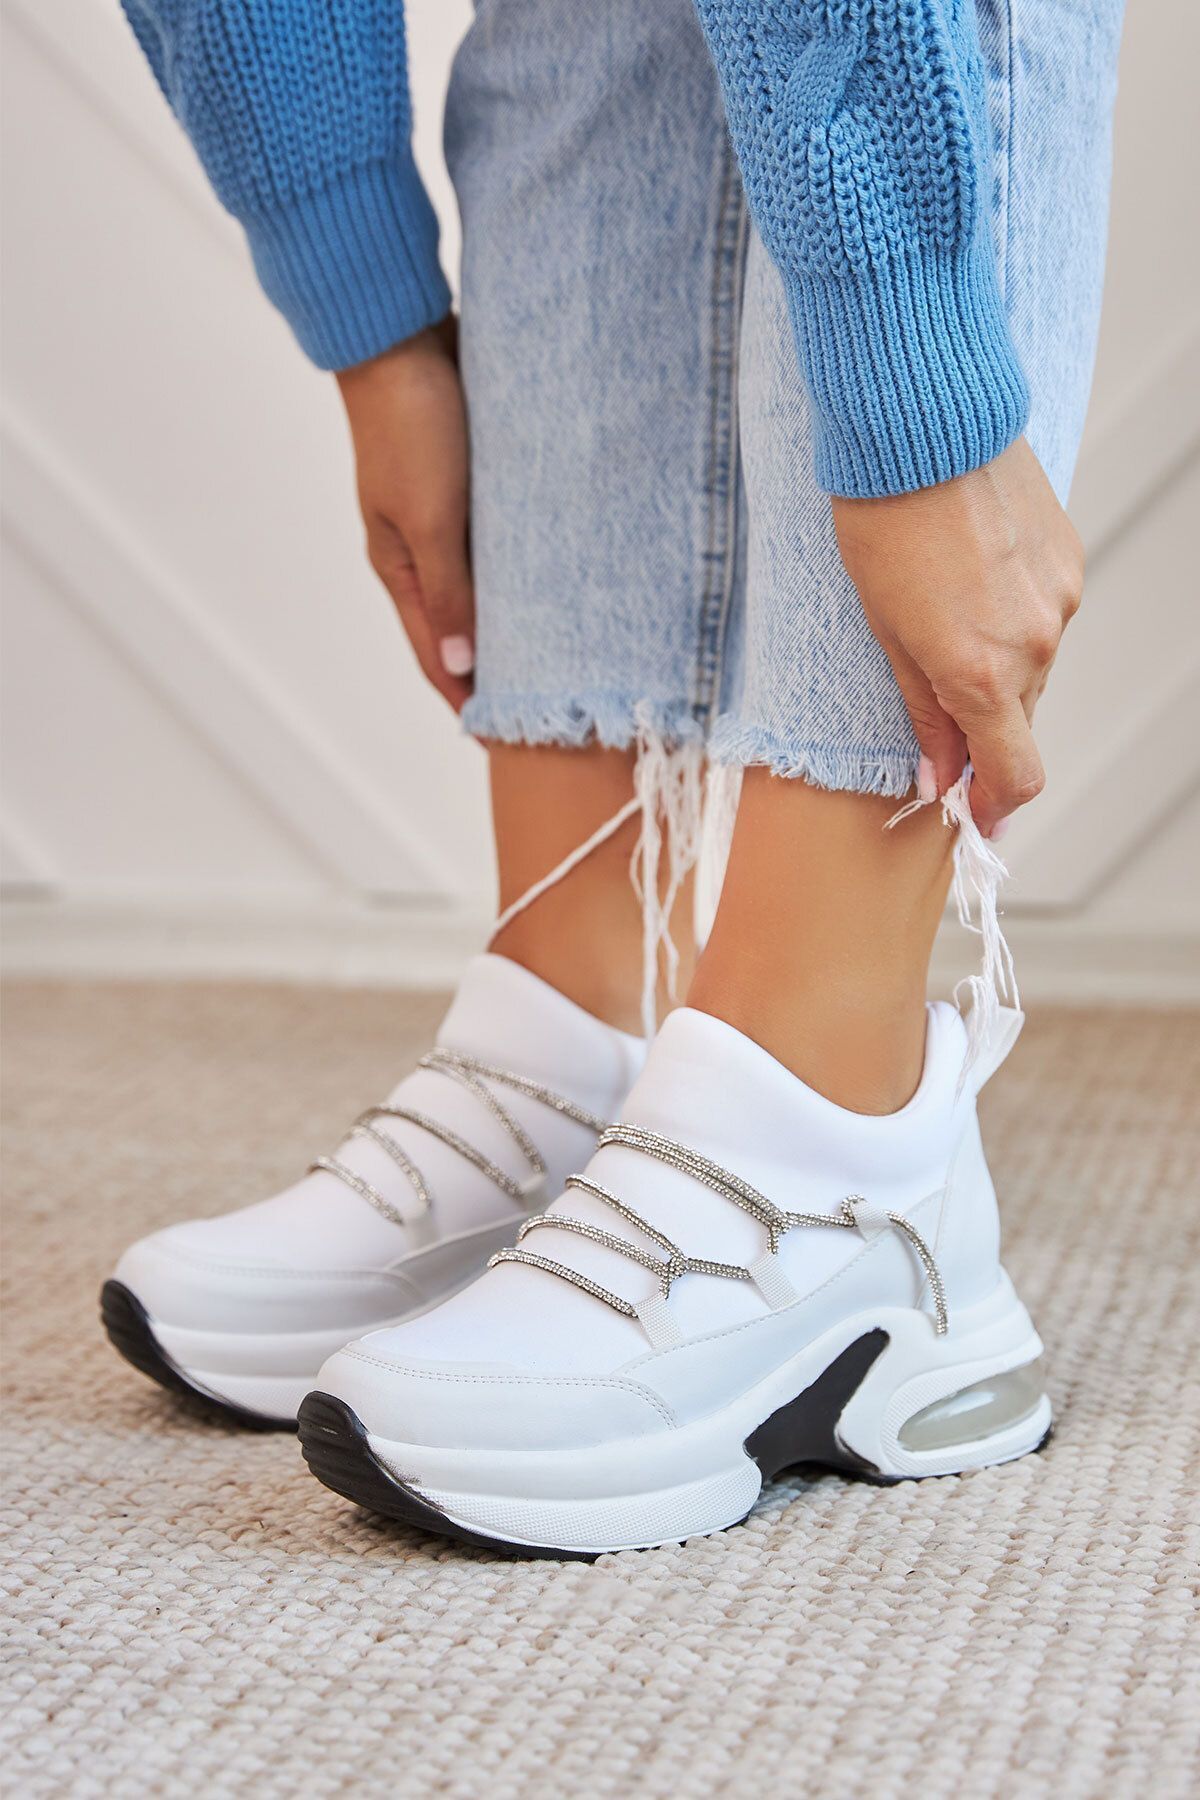 Ayakkabı Delisiyim Orka Taşlı Gizli Dolgu Topuklu Kalın Taban Kadın Spor Ayakkabı Sneaker